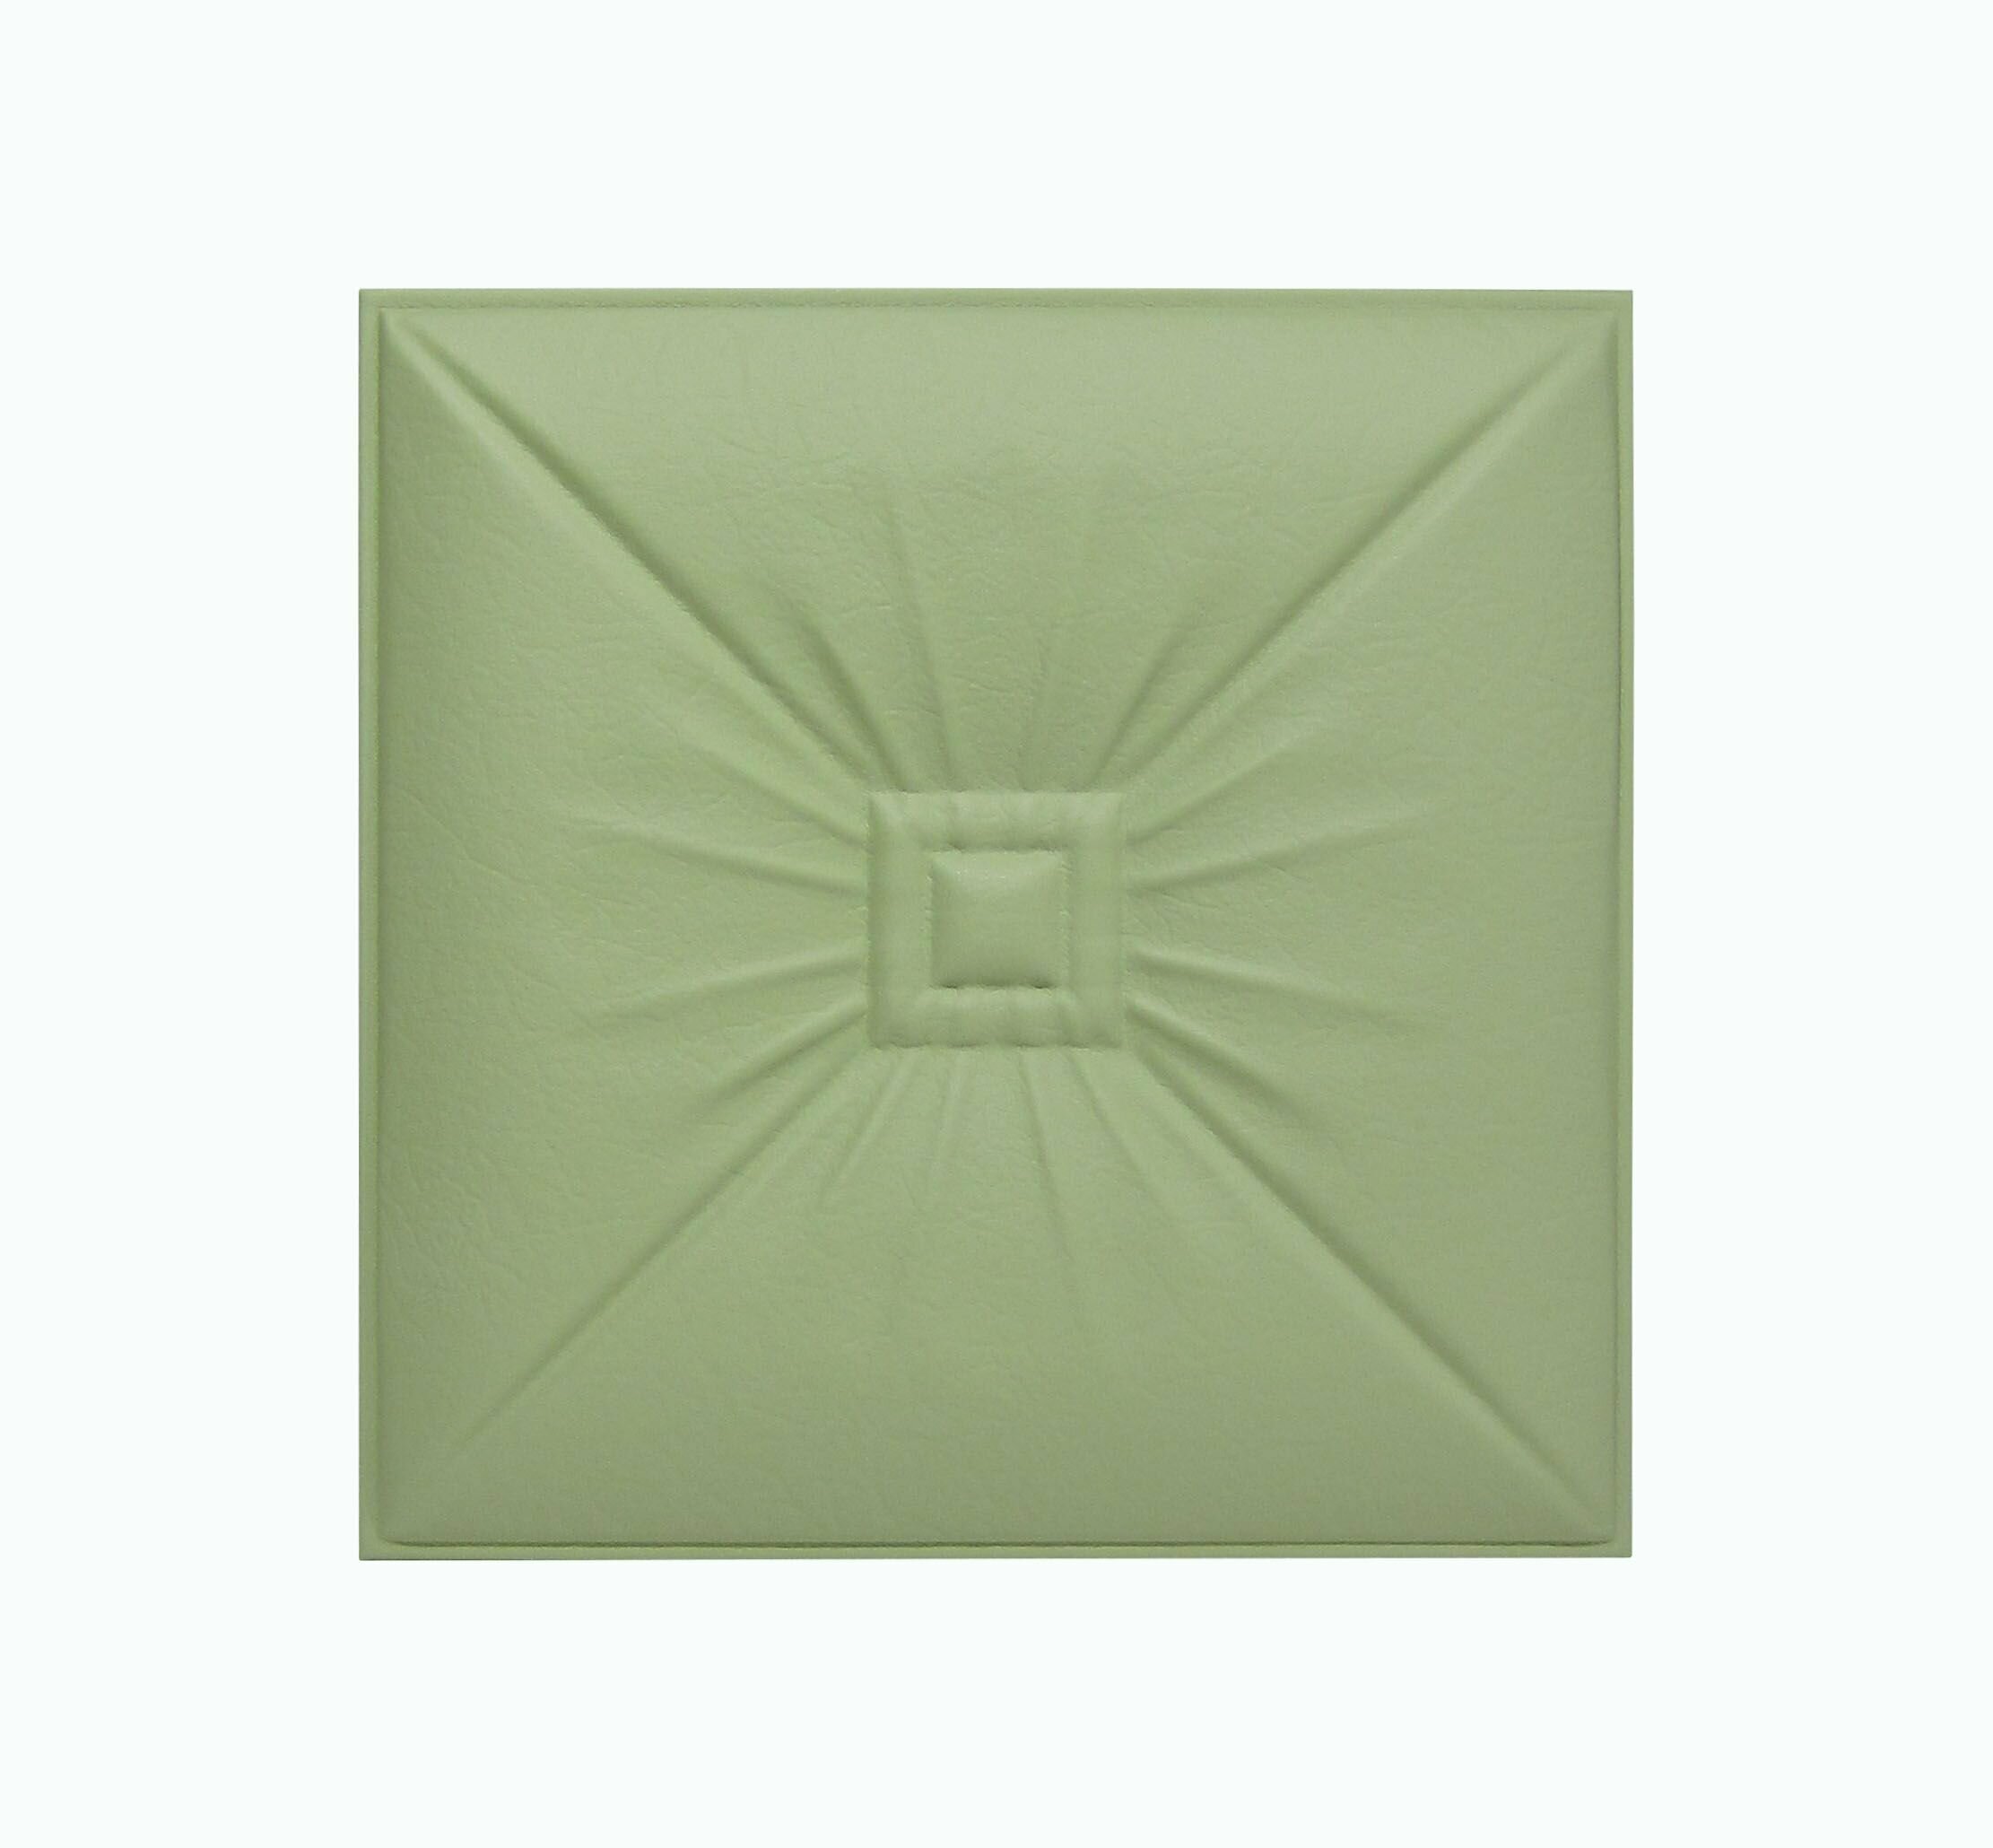 Панель стеновая из экокожи Olive Soft оливковый зеленый 40 * 40см 1шт мягкая 3D панель декор для стен и в изголовье кровати - фотография № 1